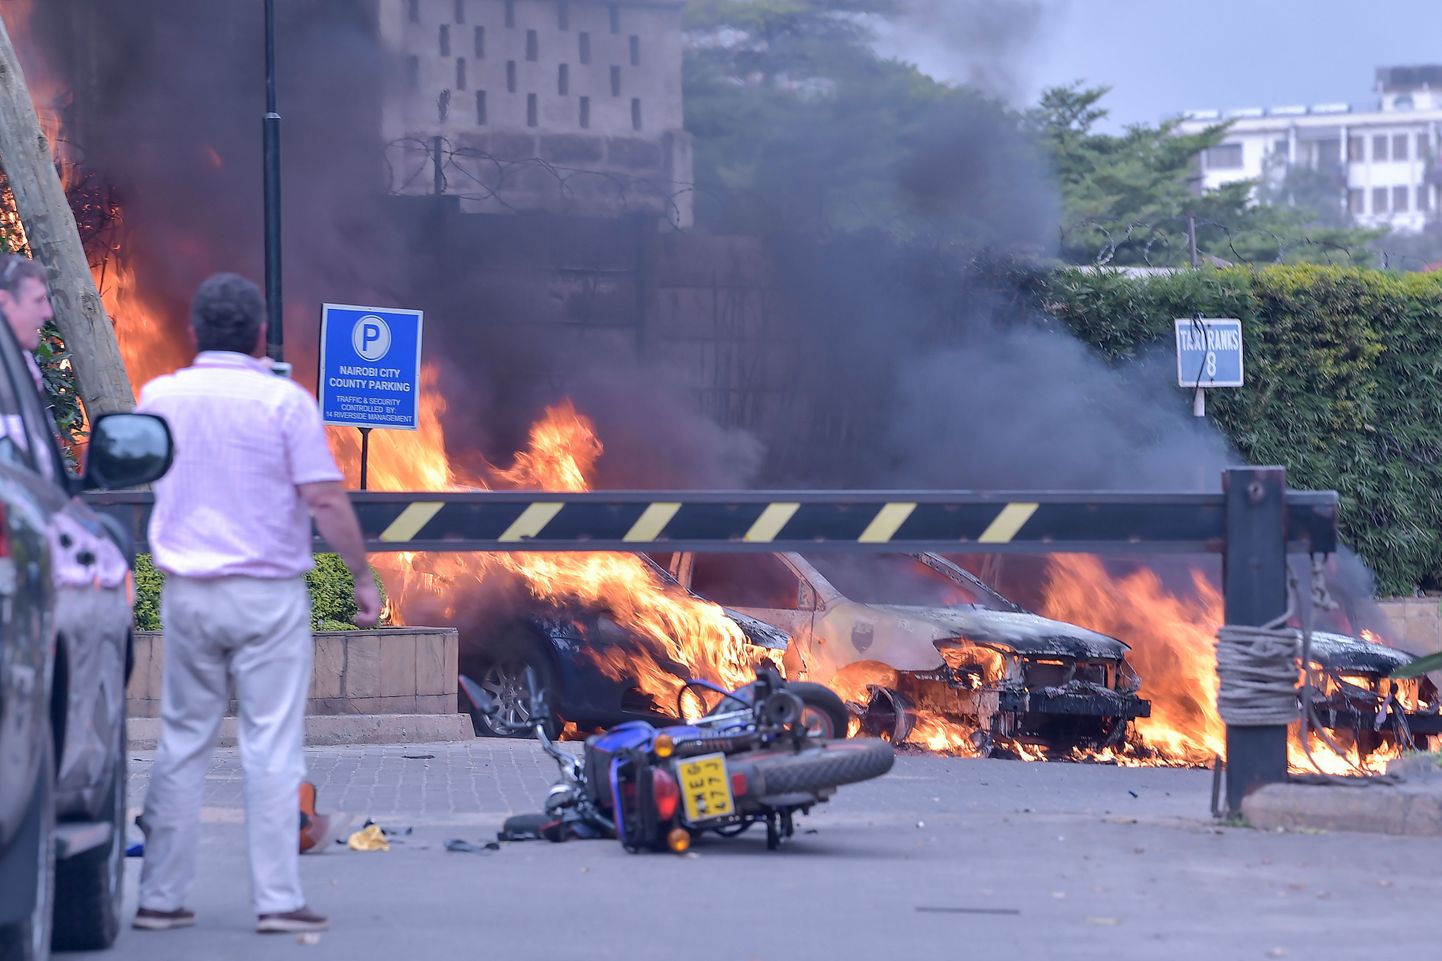 Kaks meest seisavad põlevate autode juures, mis on plahvatunud hotelli ees. Süü võtsid omaks Al-Shabaab islamistid. Pilt on artiklit illustreeriv.